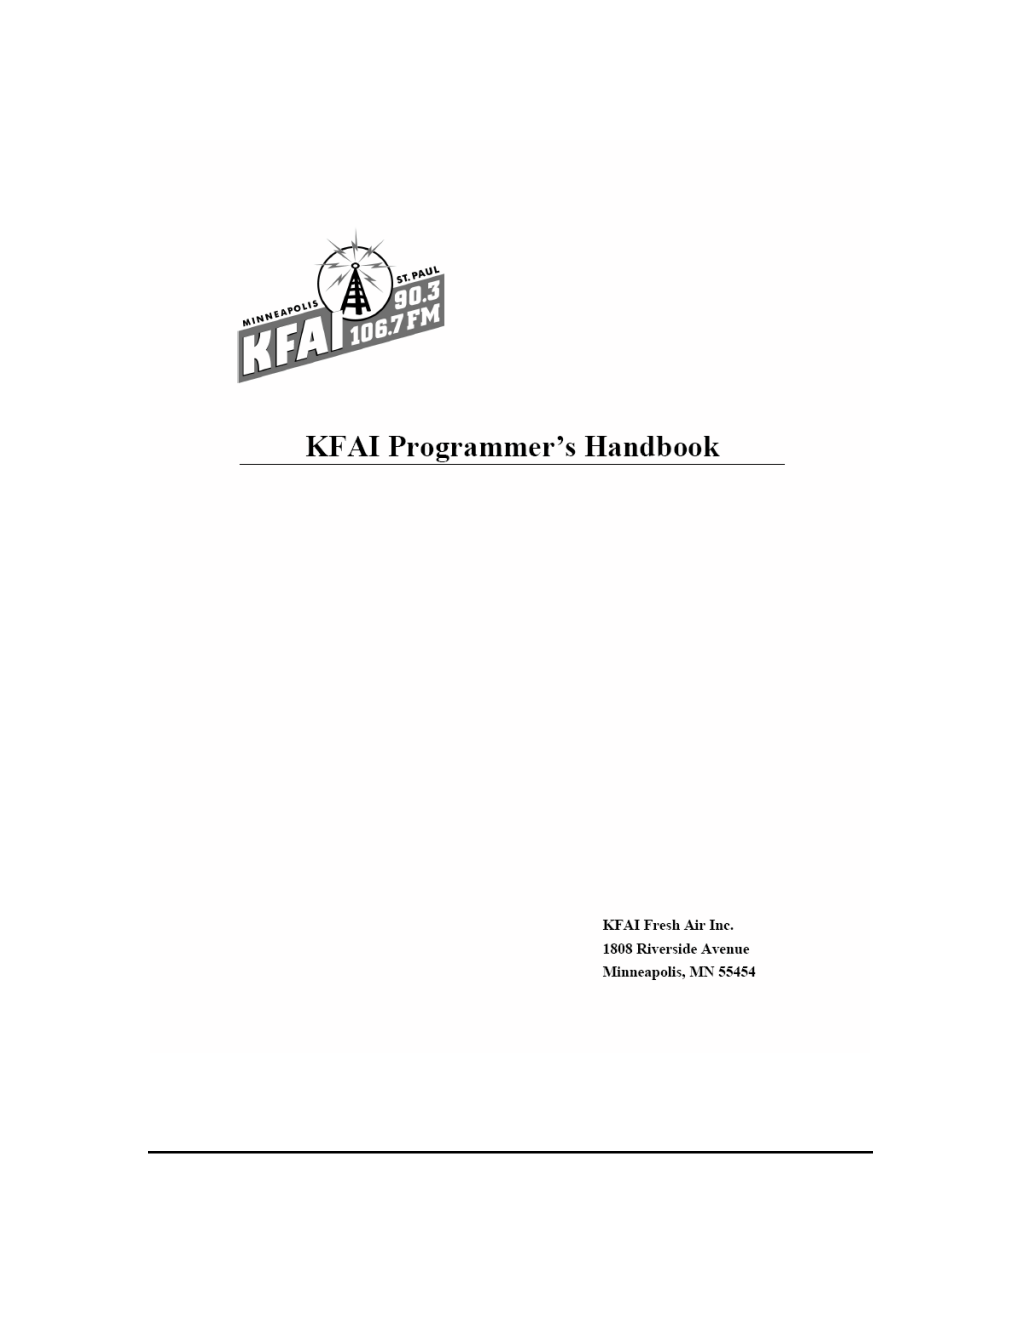 KFAI Programmer Handbook